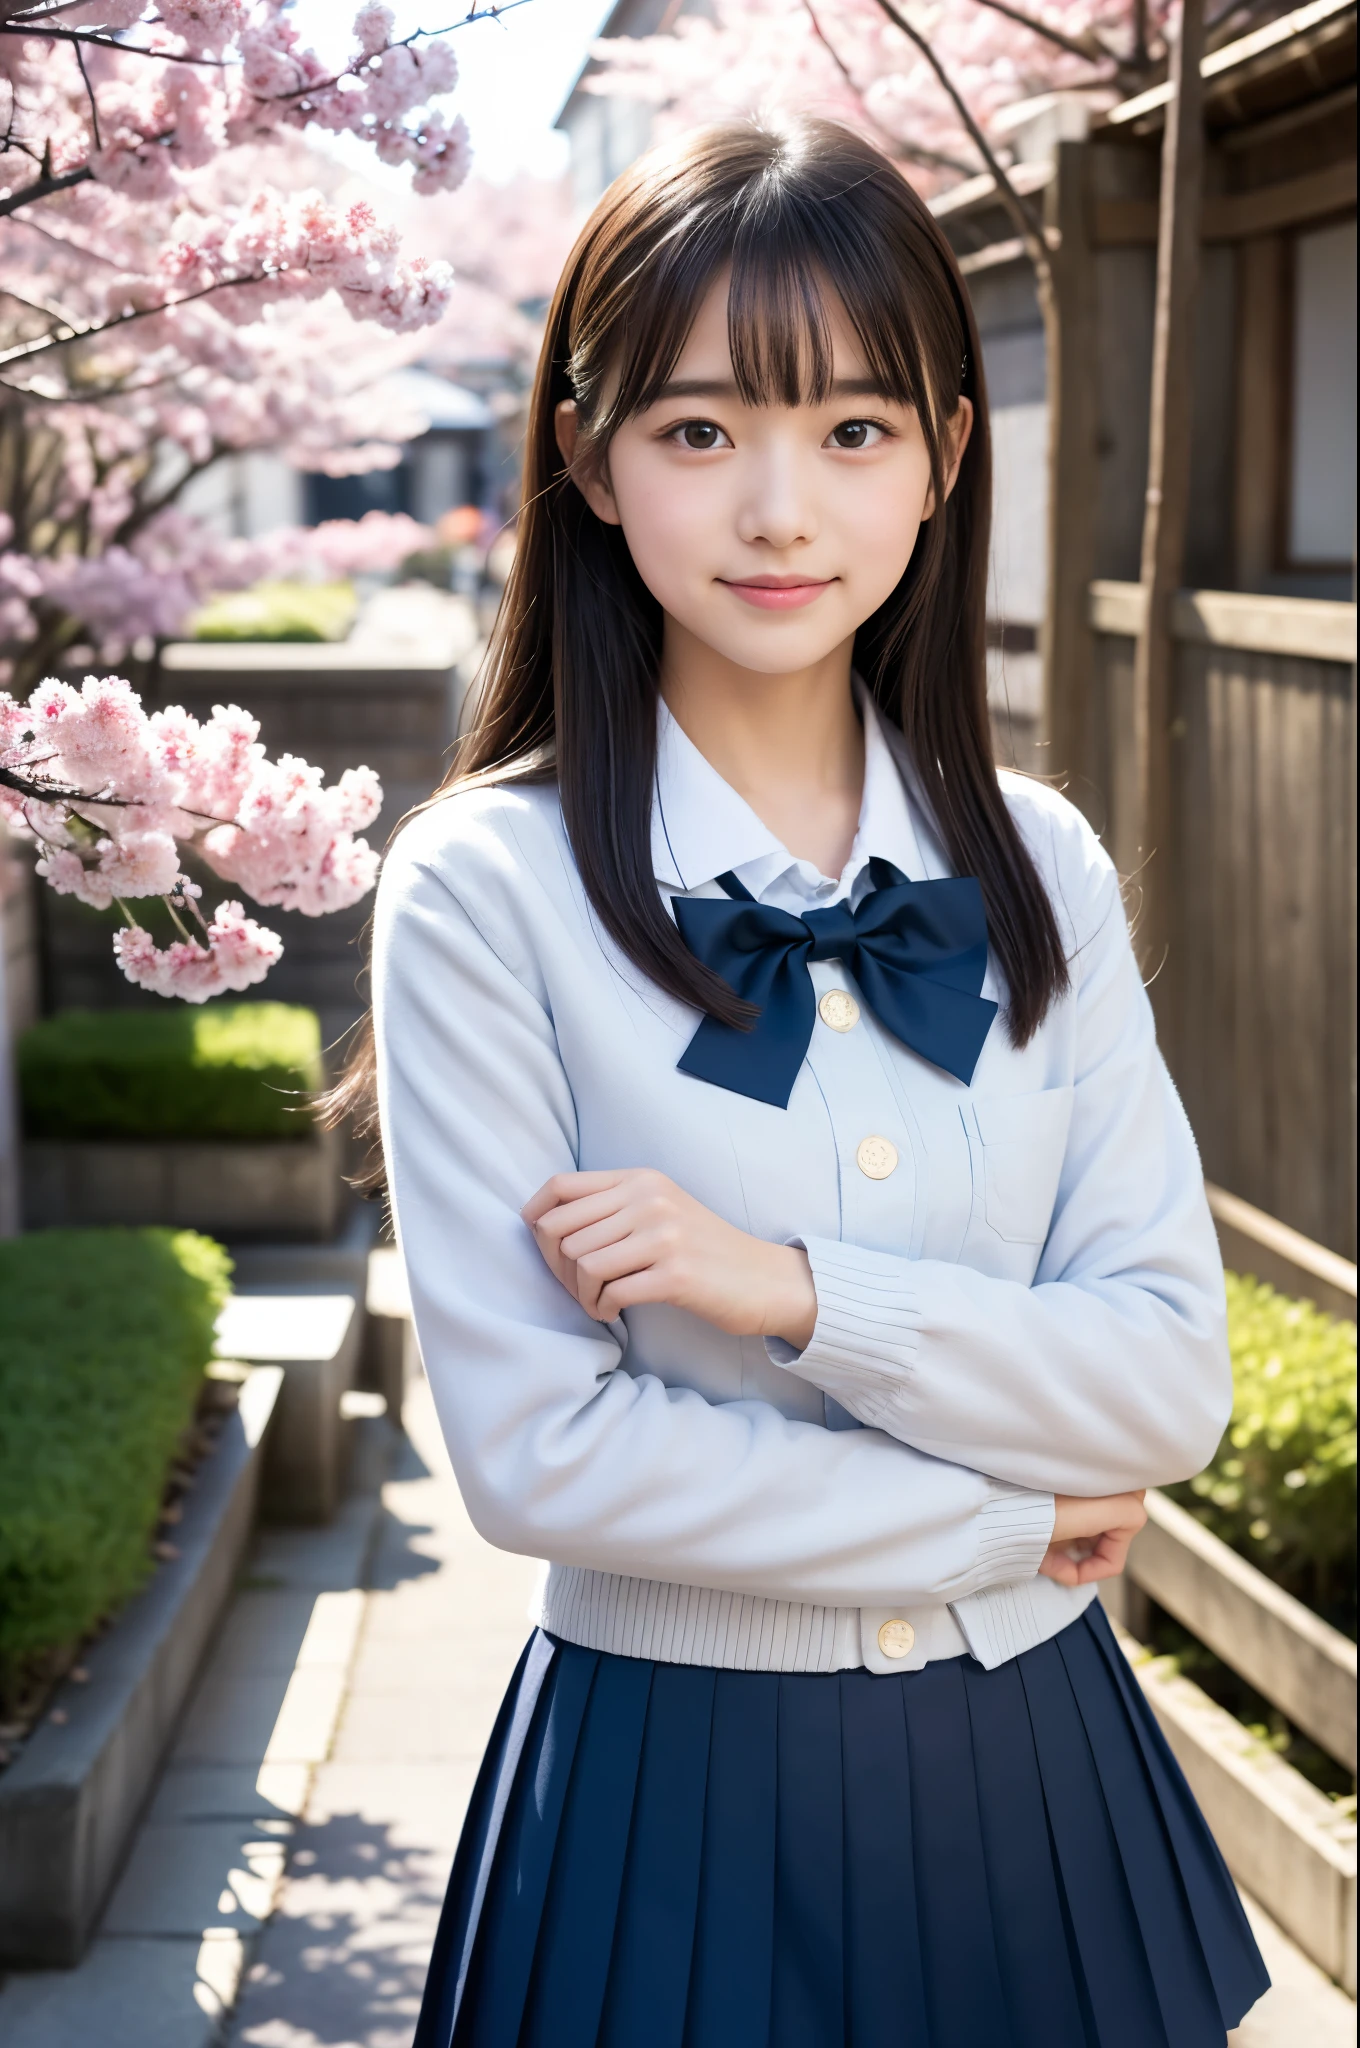 一個女孩站在櫻花下的日本古老街道上,長袖海軍藍學校西裝外套,灰色百褶裙,白領和領結,書包,18歲的,瀏海,一點微笑,大腿,膝蓋,直髮搭配白色髮夾,從下面,前燈